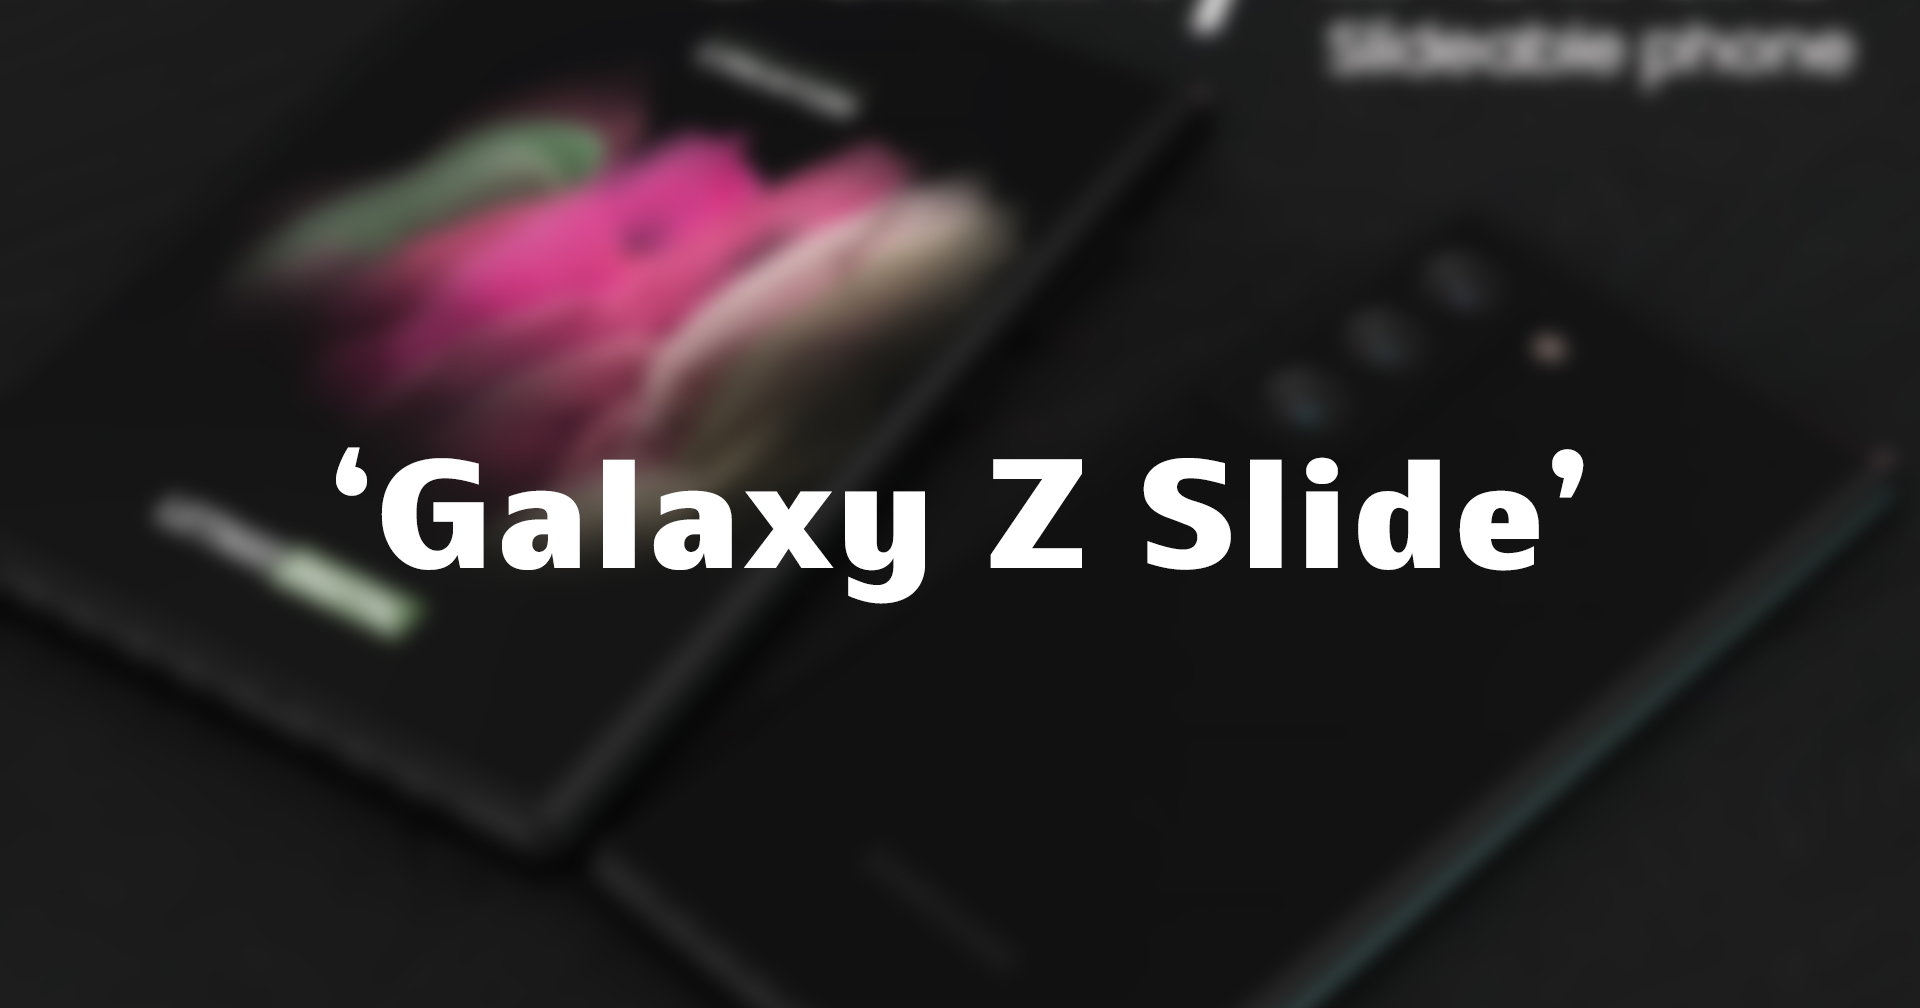 โผล่อีกรุ่น Samsung Galaxy Z Slide จดทะเบียนเครื่องหมายการค้าแล้ว